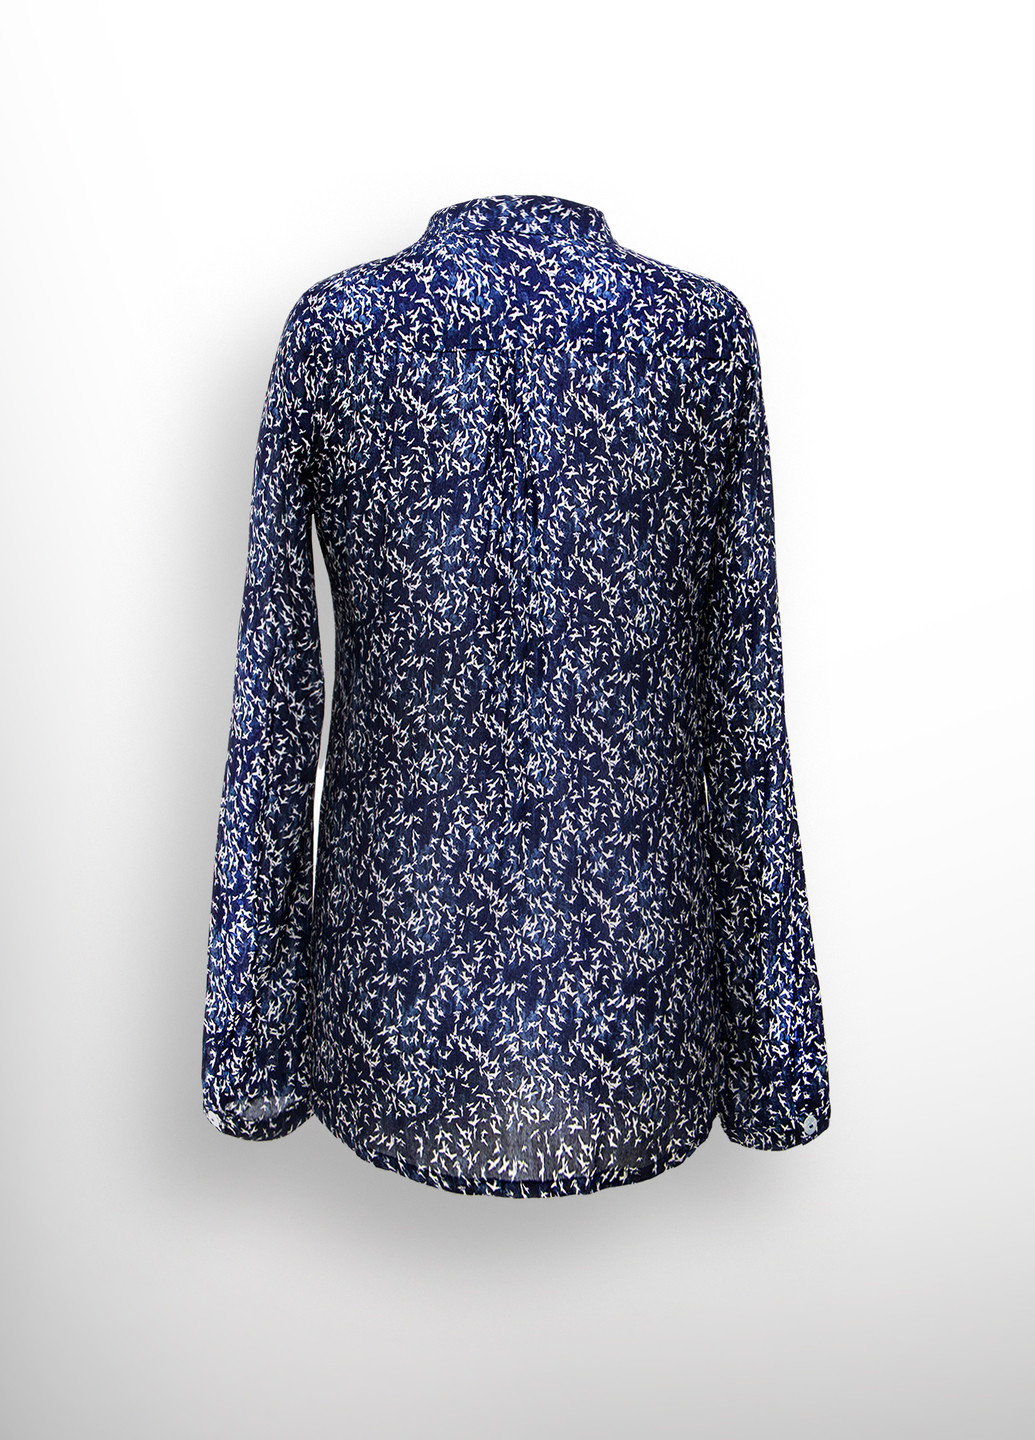 Темно-синяя демисезонная блуза с полупланкой принт ласточки в79 Luxik